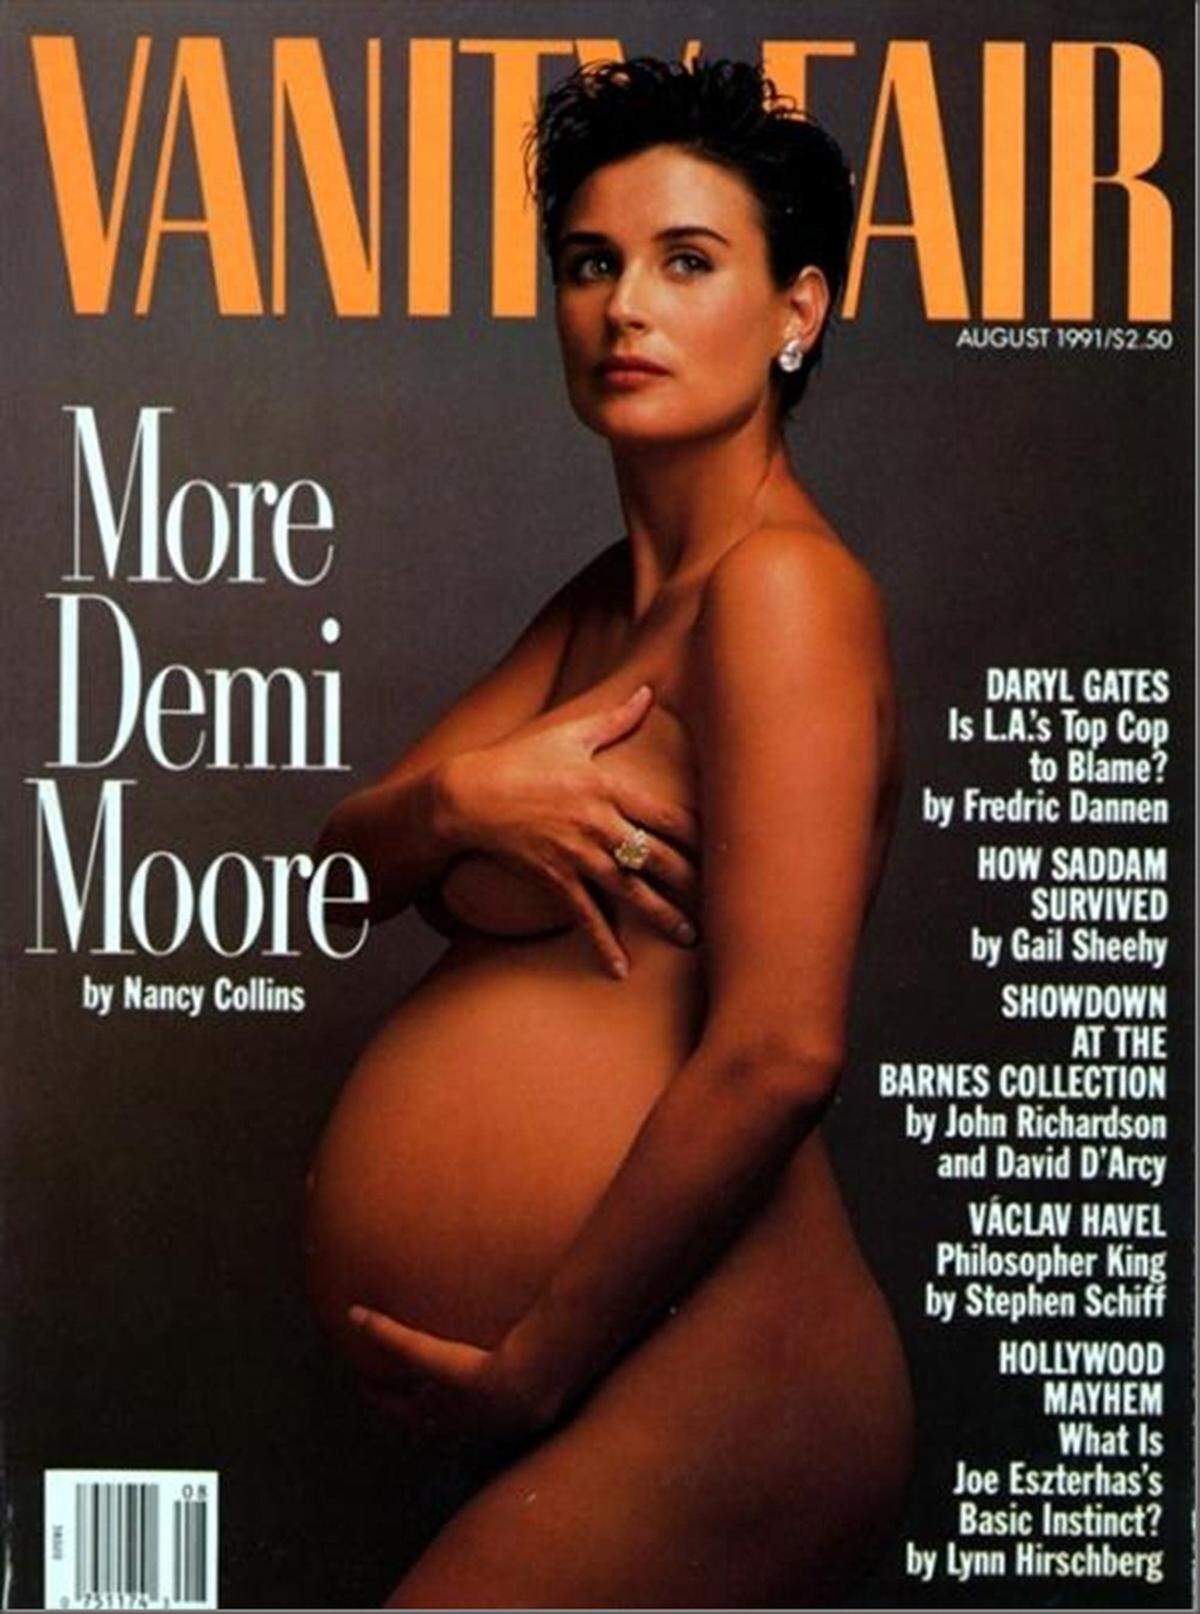 Magazincover über die man sich empörte, gab es in der Vergangenheit schon viele. So beispielsweise die nackte und hochschwangere Demi Moore auf dem Cover der Vanity Fair im August 1991. Viele Trafiken verboten oder verdeckten das Titelbild damals.